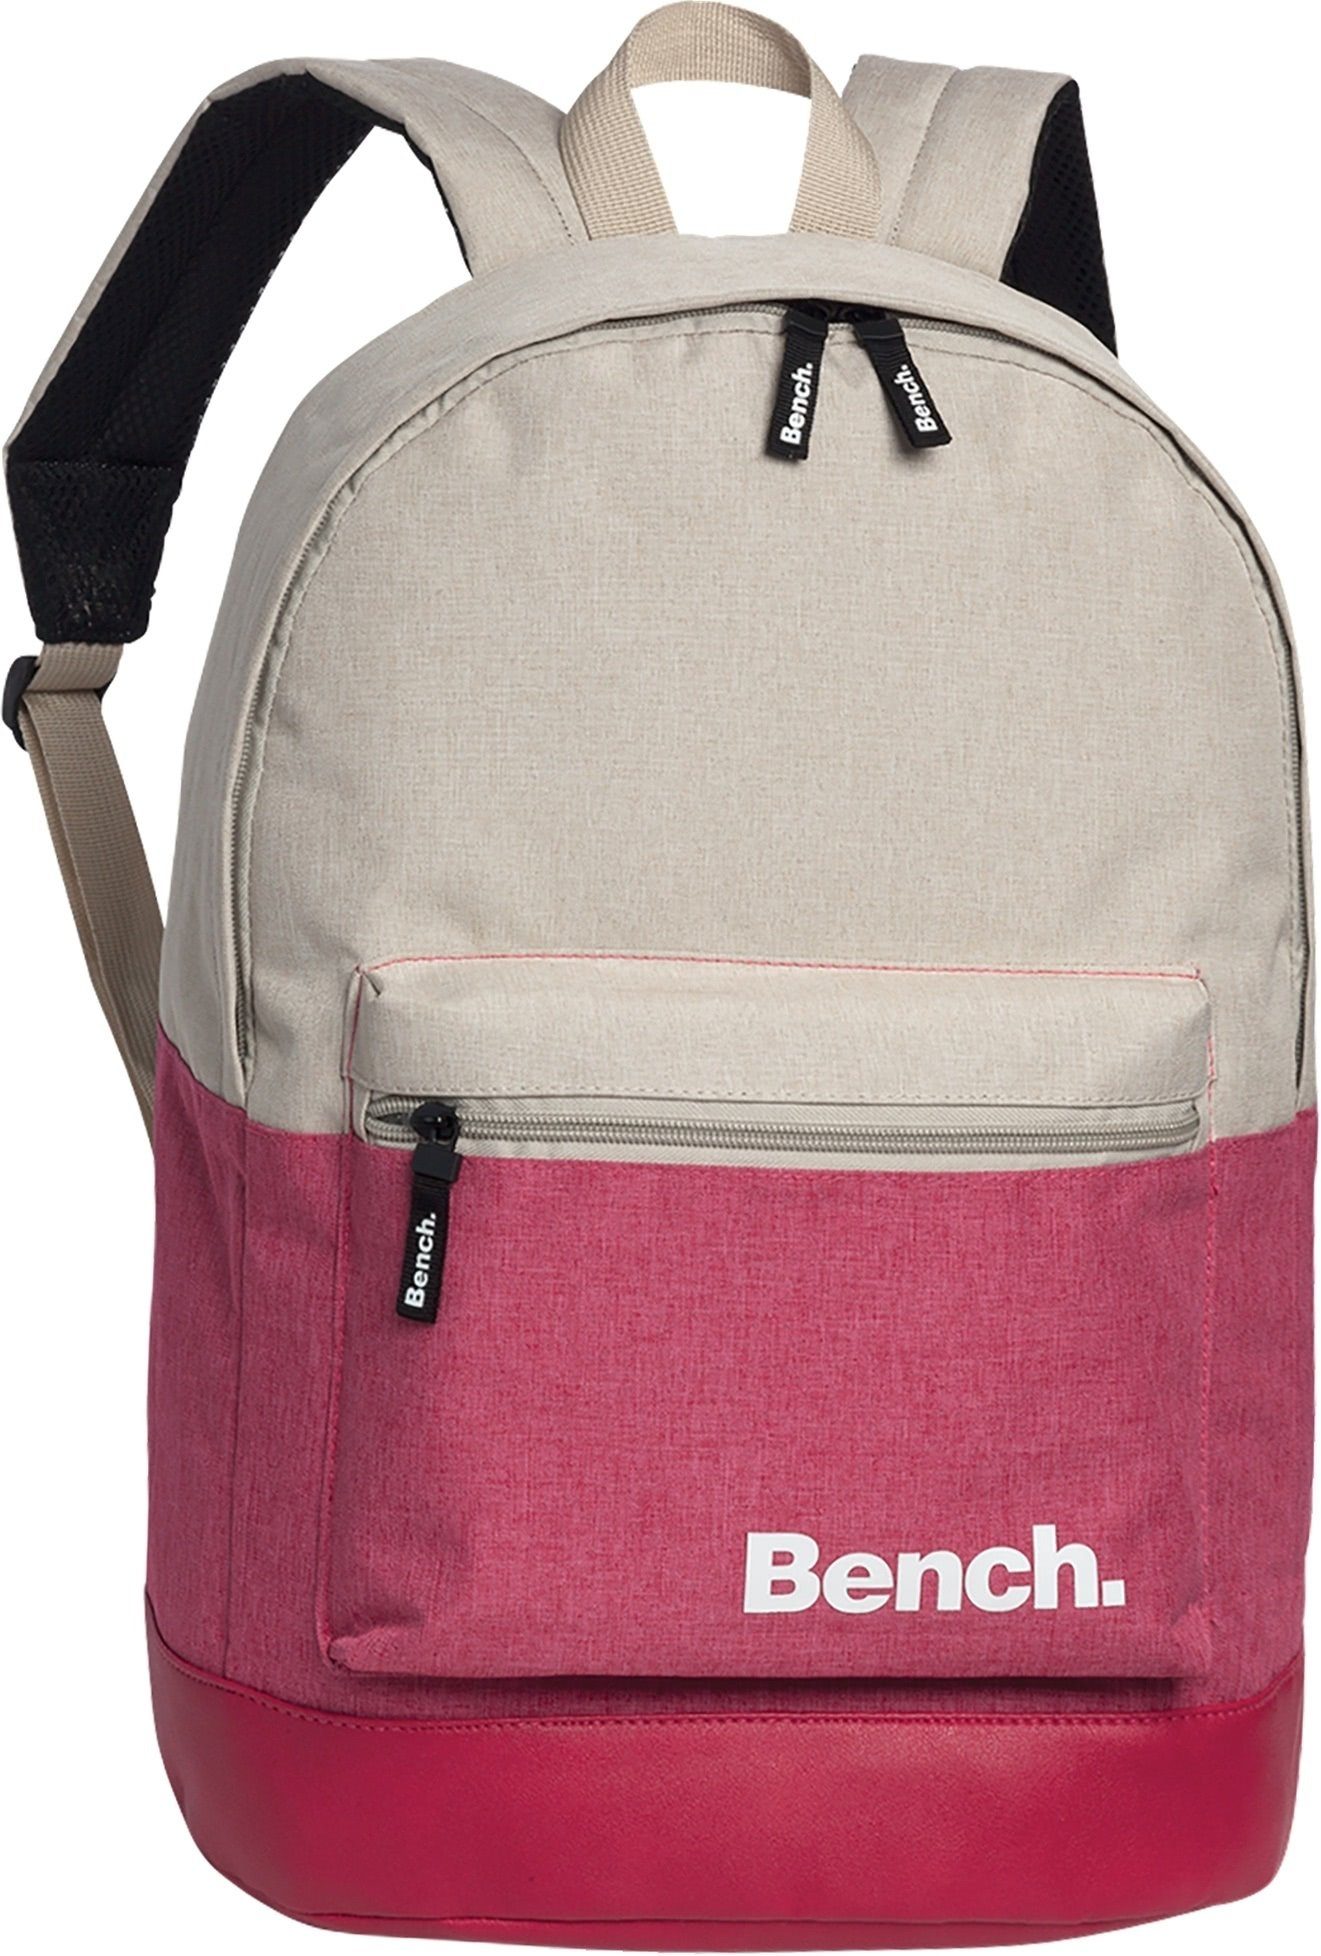 Bench. Freizeitrucksack Bench Daypack Rucksack Backpack pink (Sporttasche, Sporttasche), Freizeitrucksack, Sporttasche aus Polyester in pink, sand Größe ca. 42